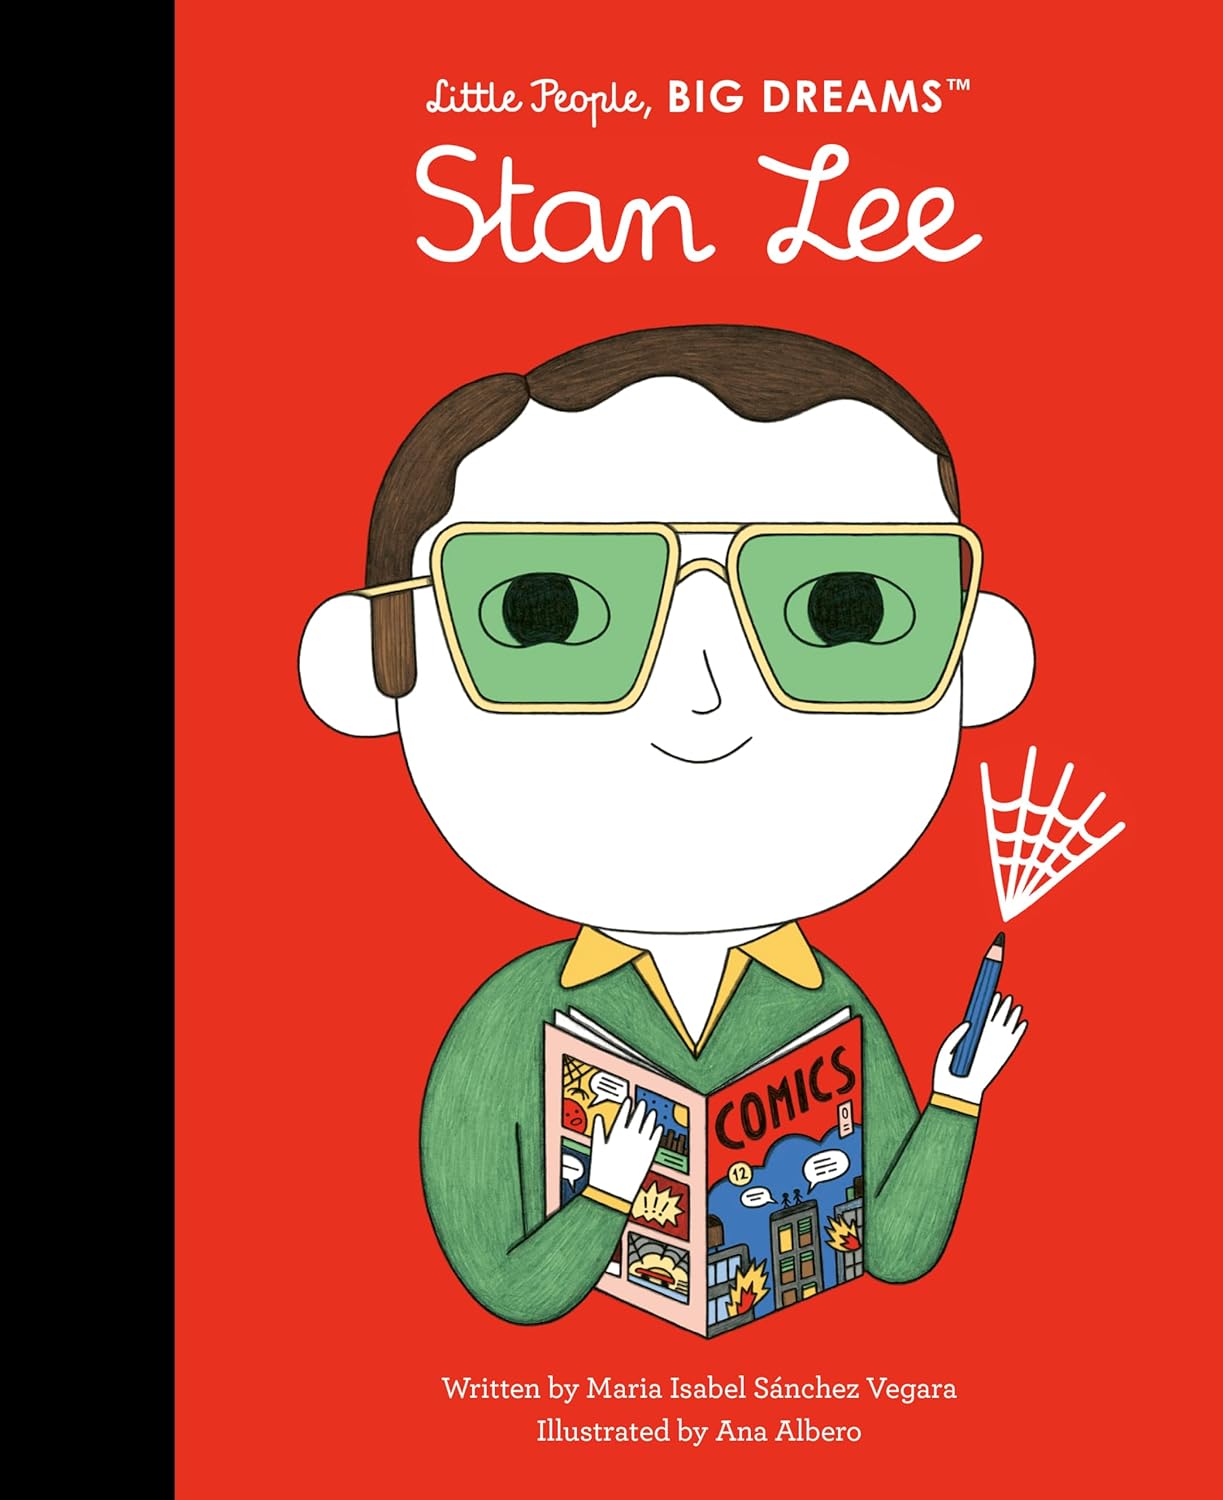 Little People Big Dreams: Stan Lee